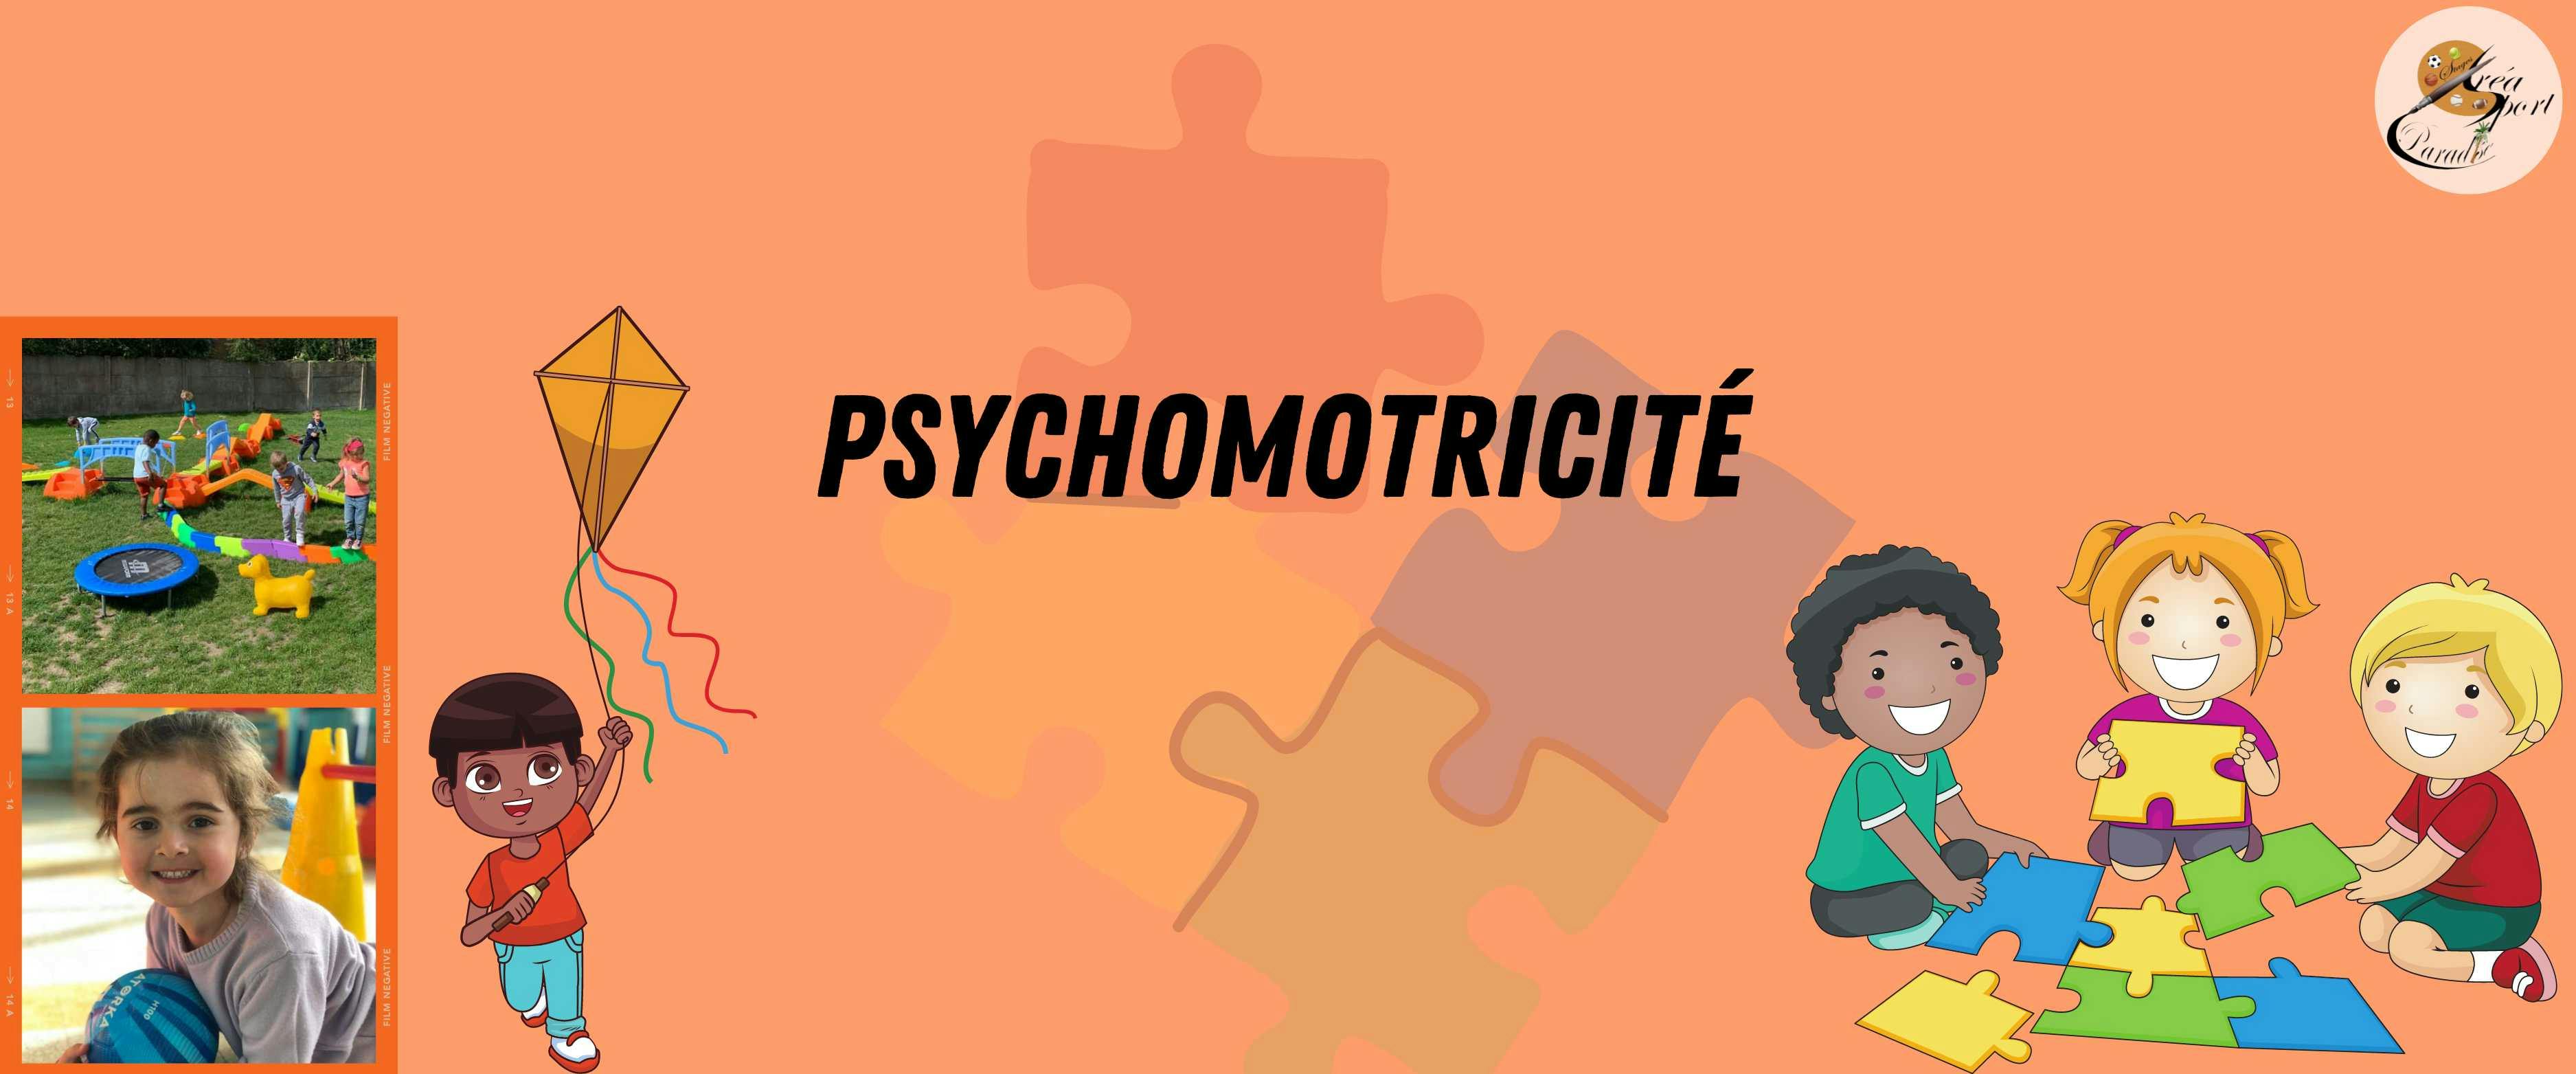 Printemps S1 : Psychomotricité